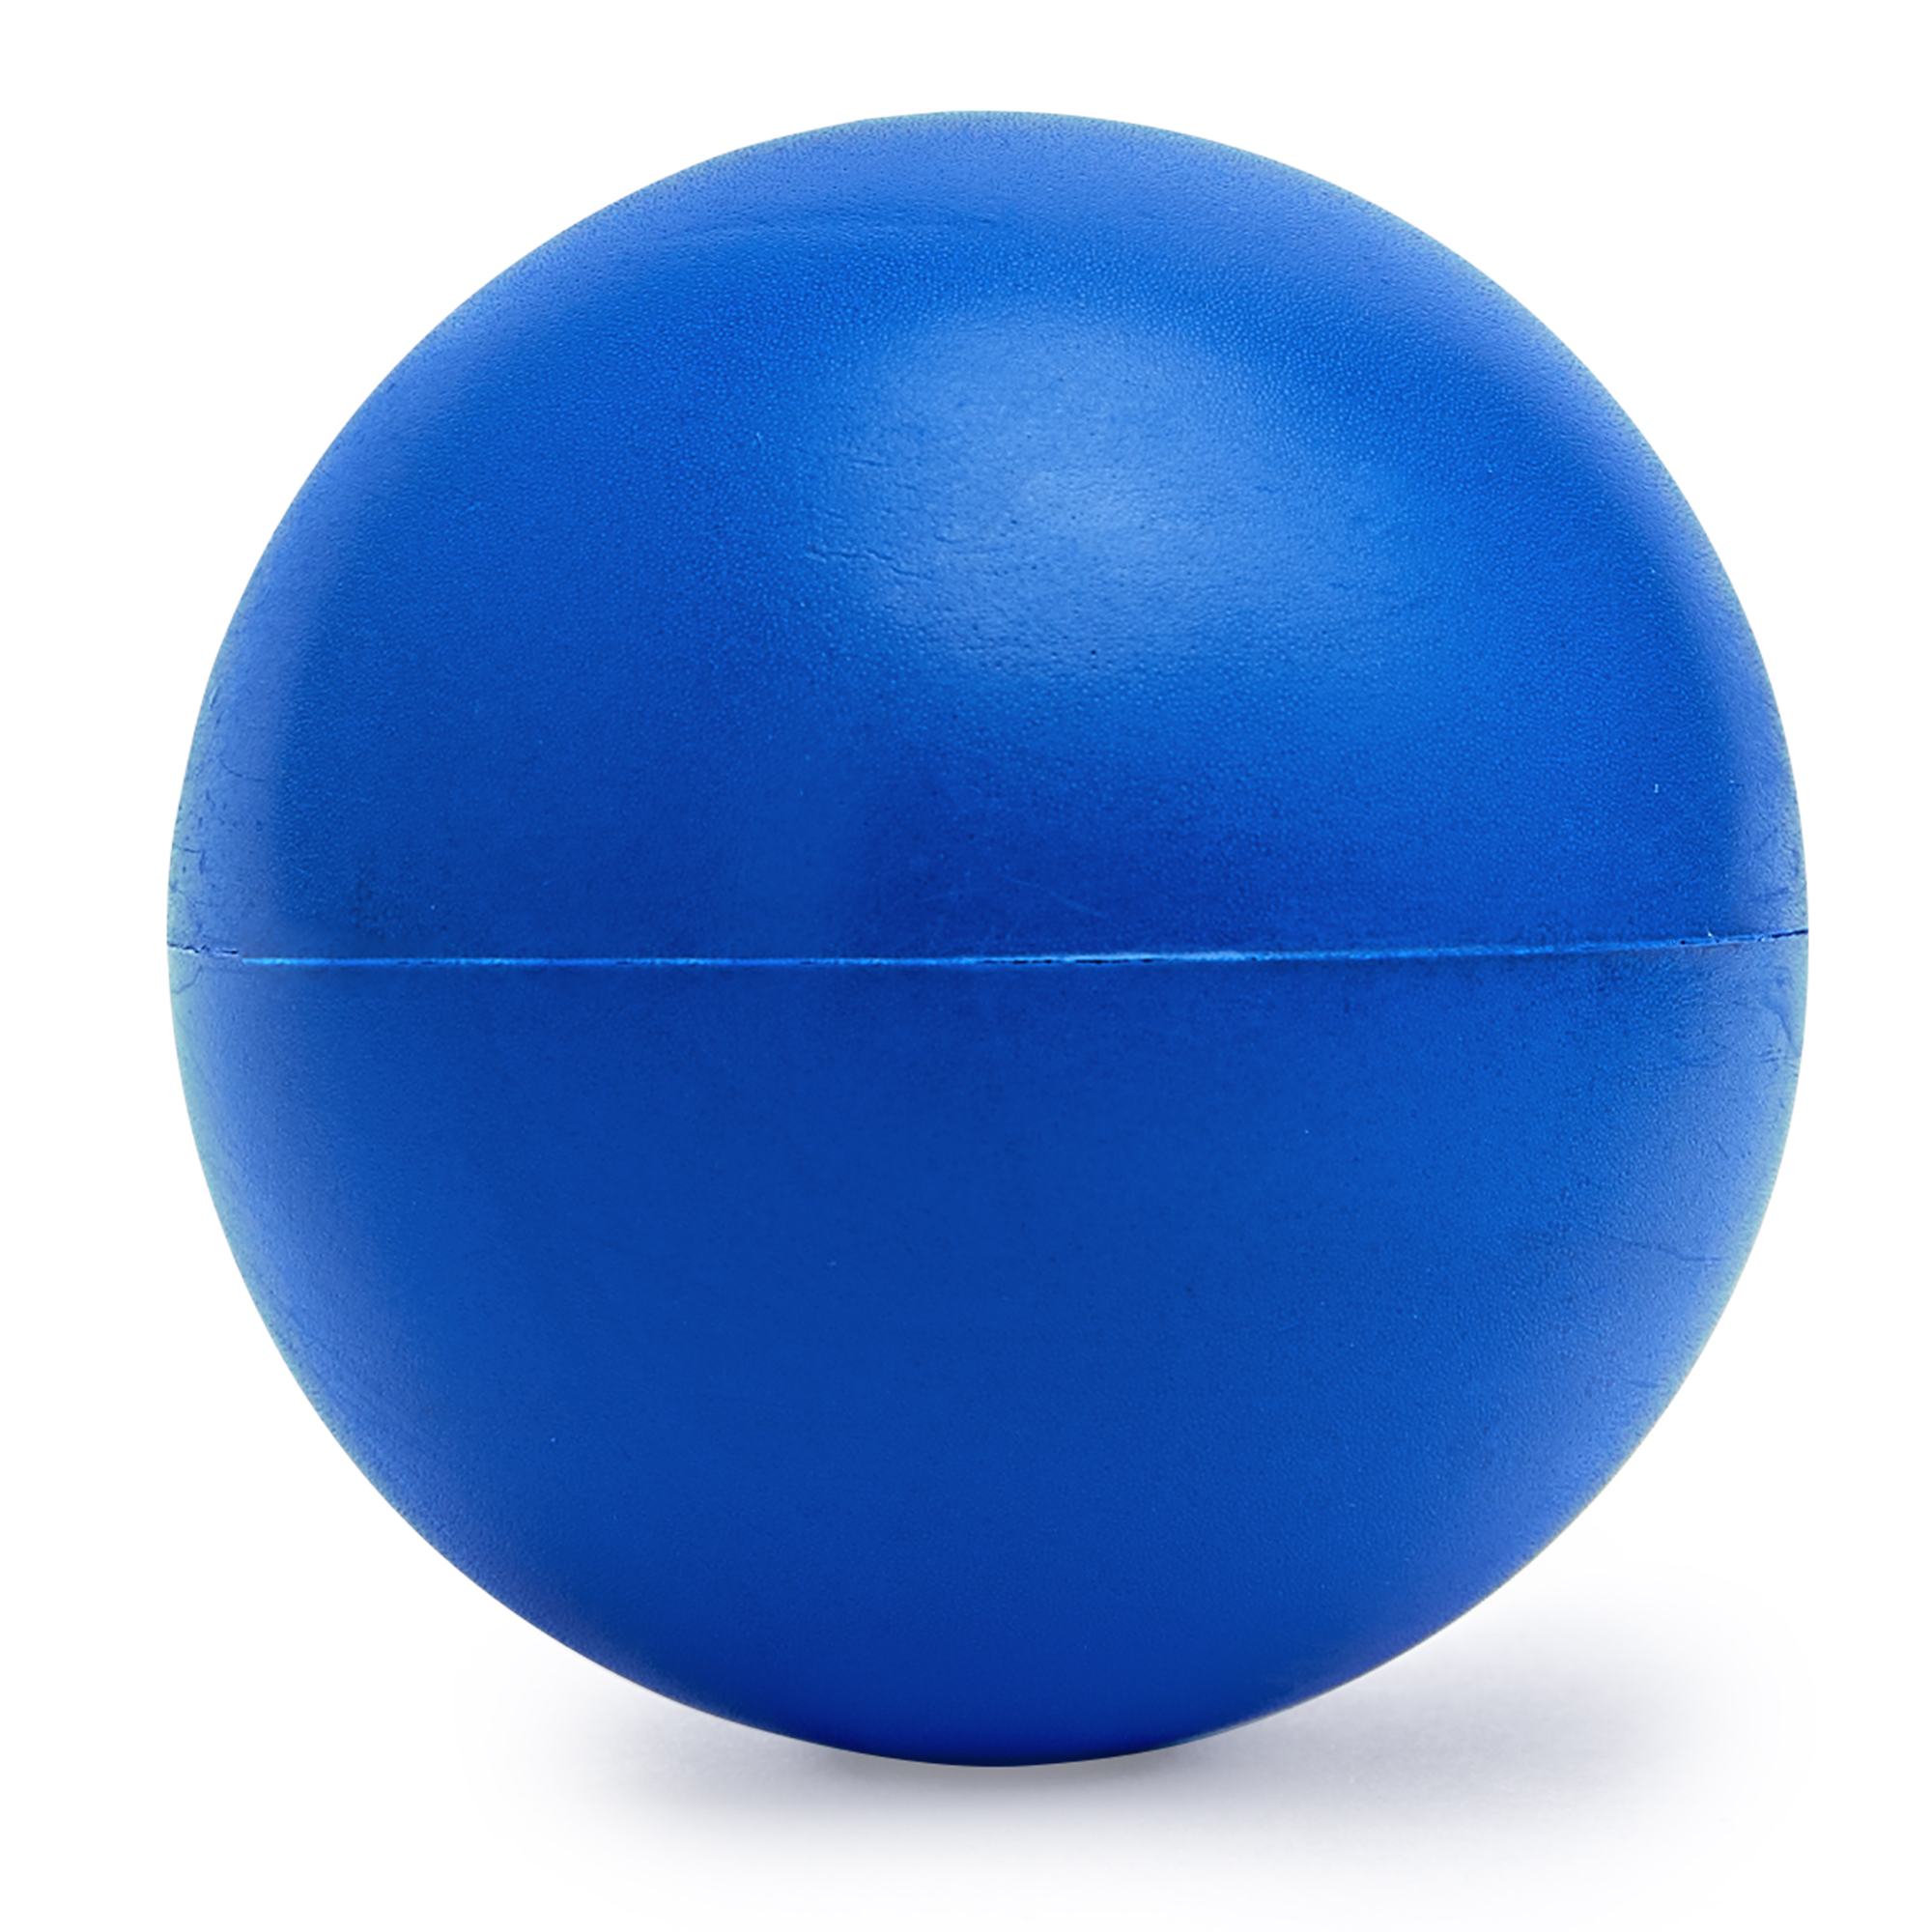 2642-ball-palla-antistress-in-tinta-unita-royal.jpg